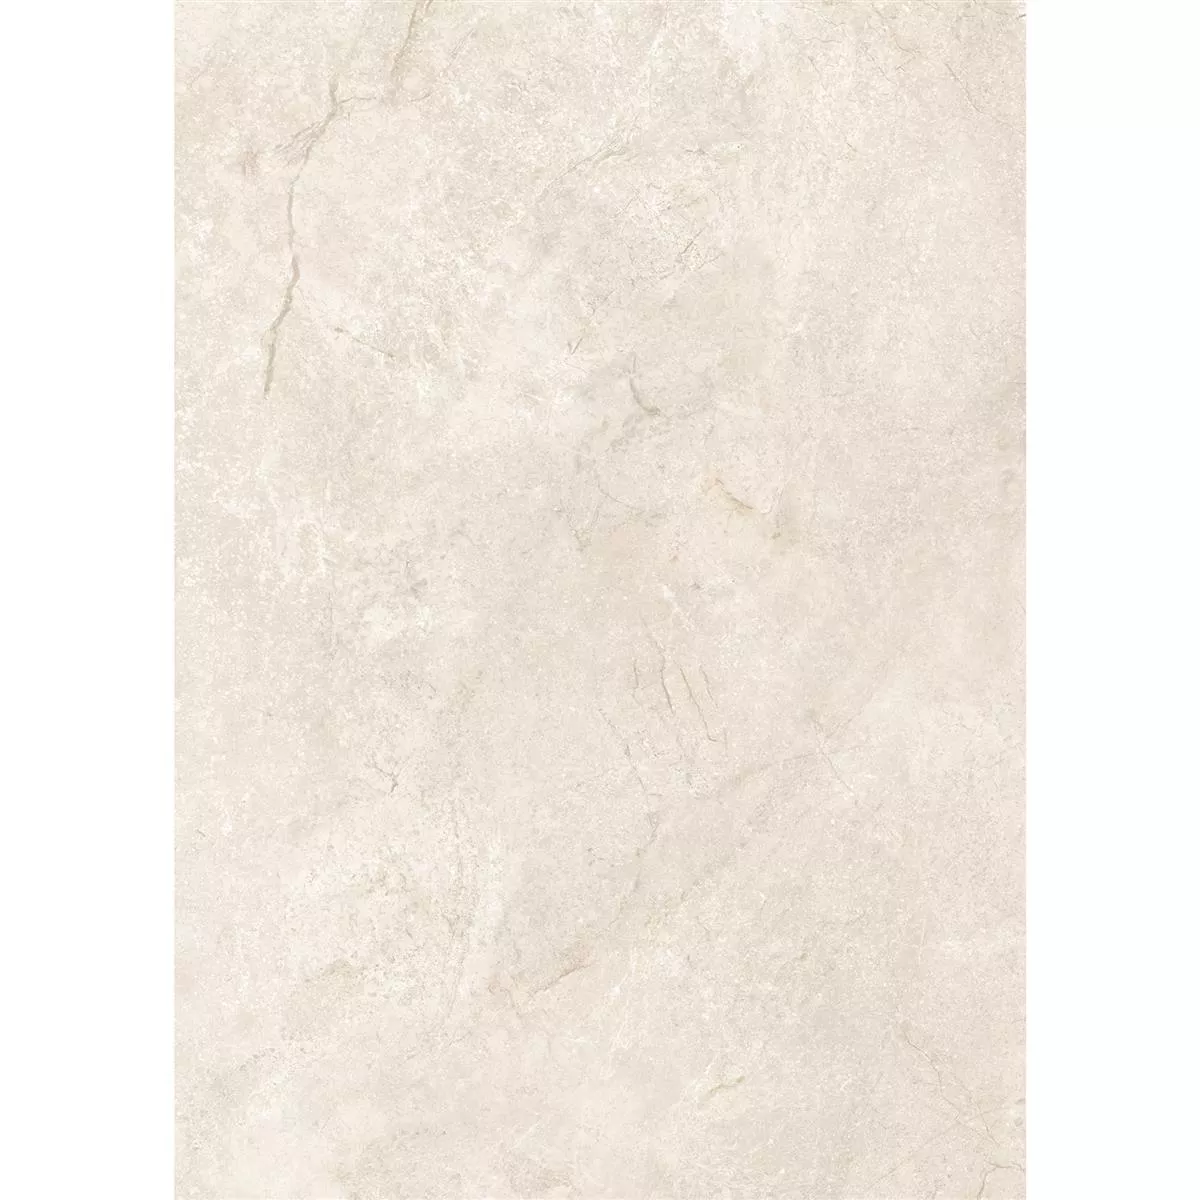 Πρότυπο από Πλακάκια Δαπέδου Pangea Μαρμάρινη Όψη Αμεμπτος Cream 60x120cm